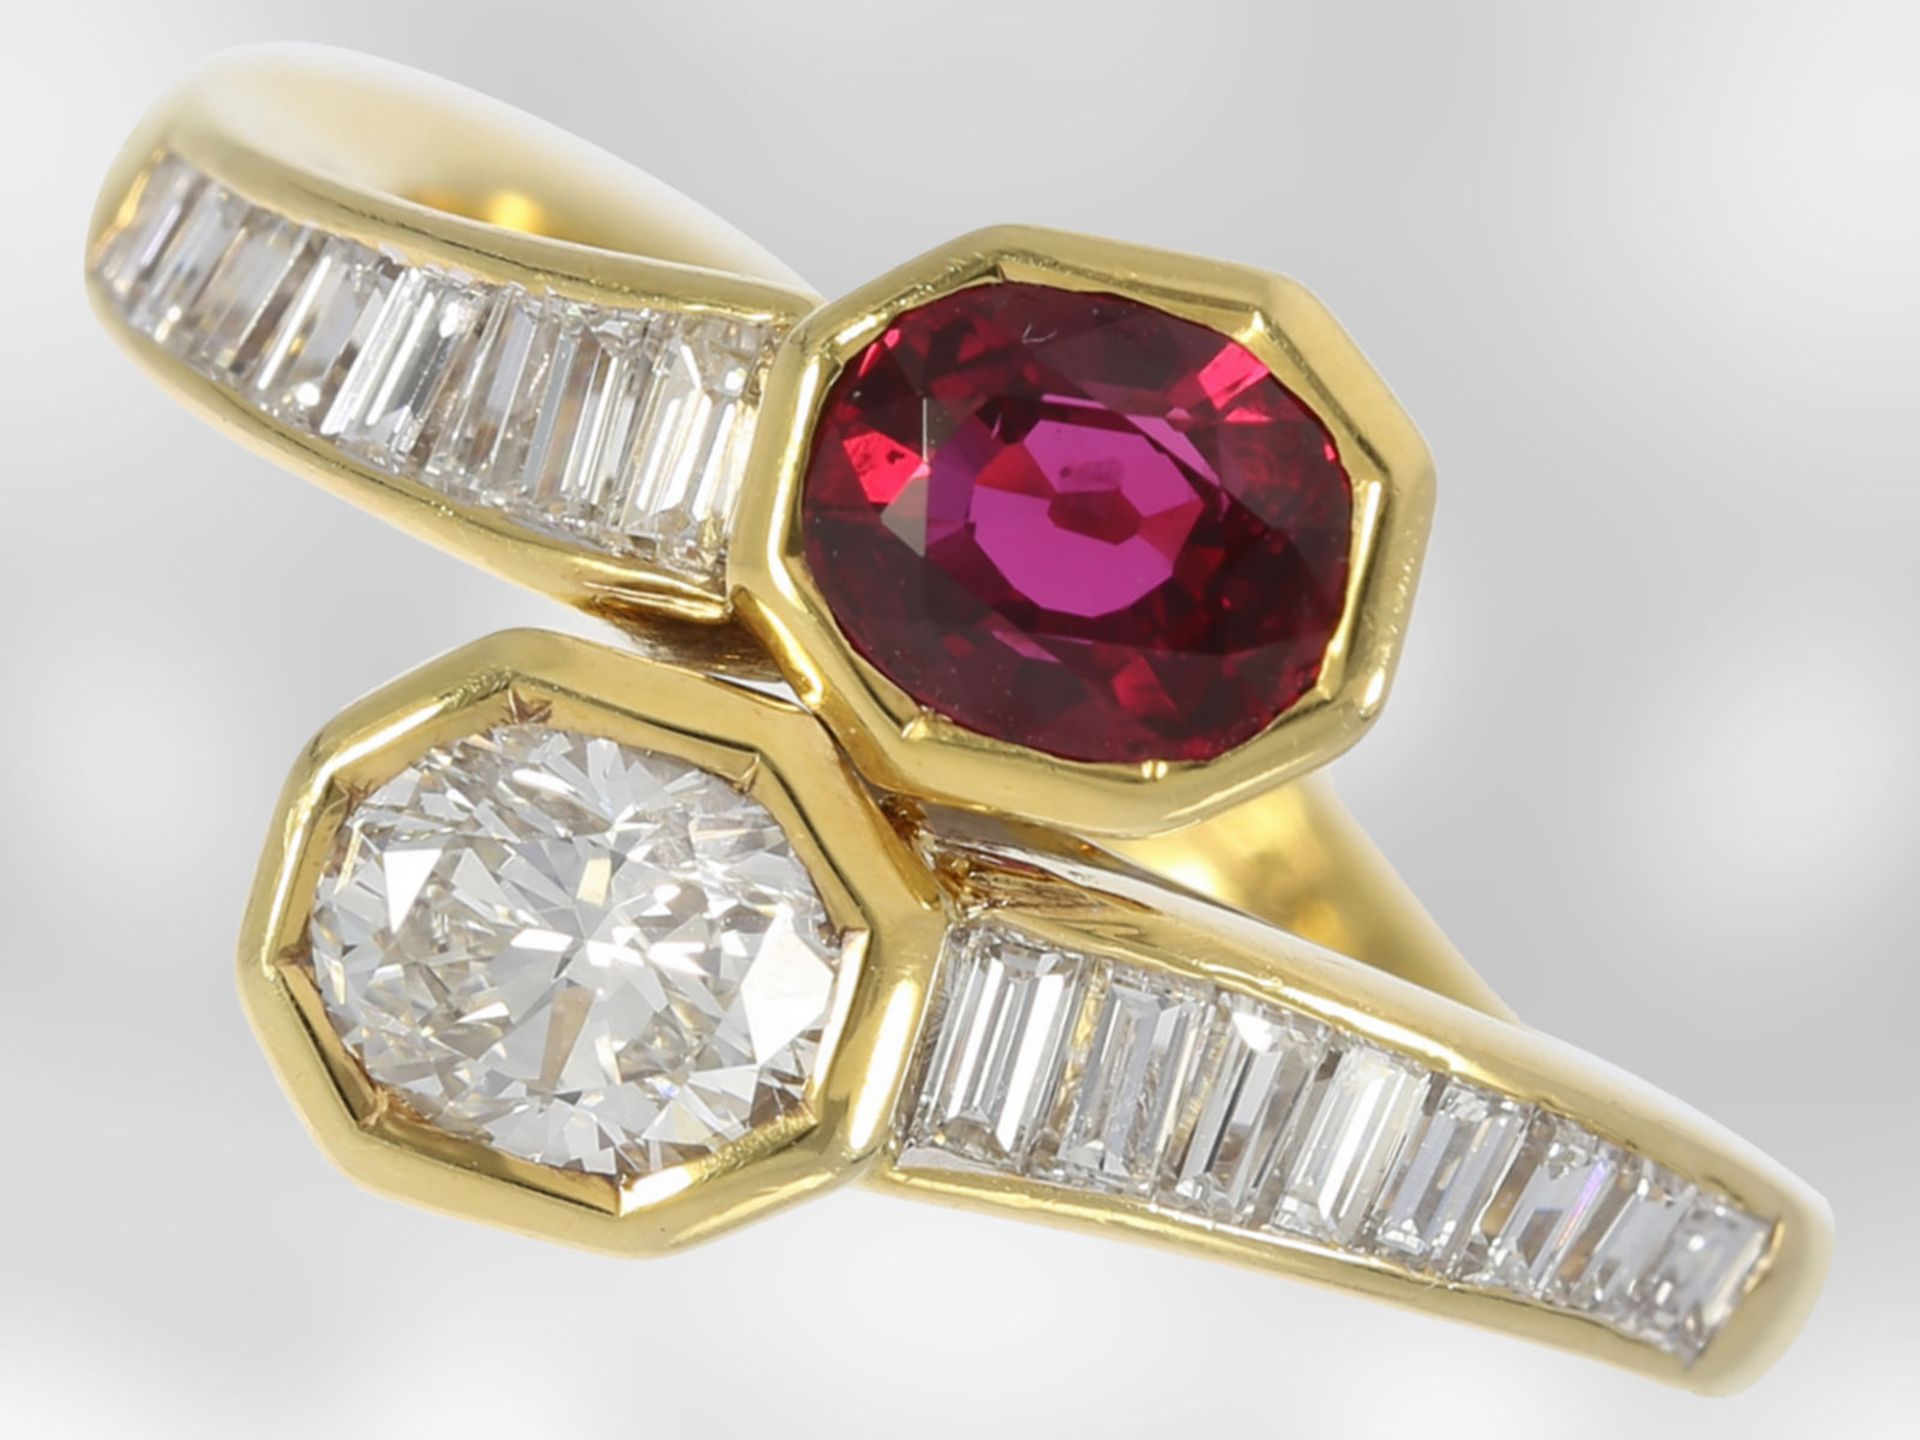 Ring: italienischer Designerring mit Rubin und Diamanten, insgesamt ca. 2,31ct, 18K Gold, teurer